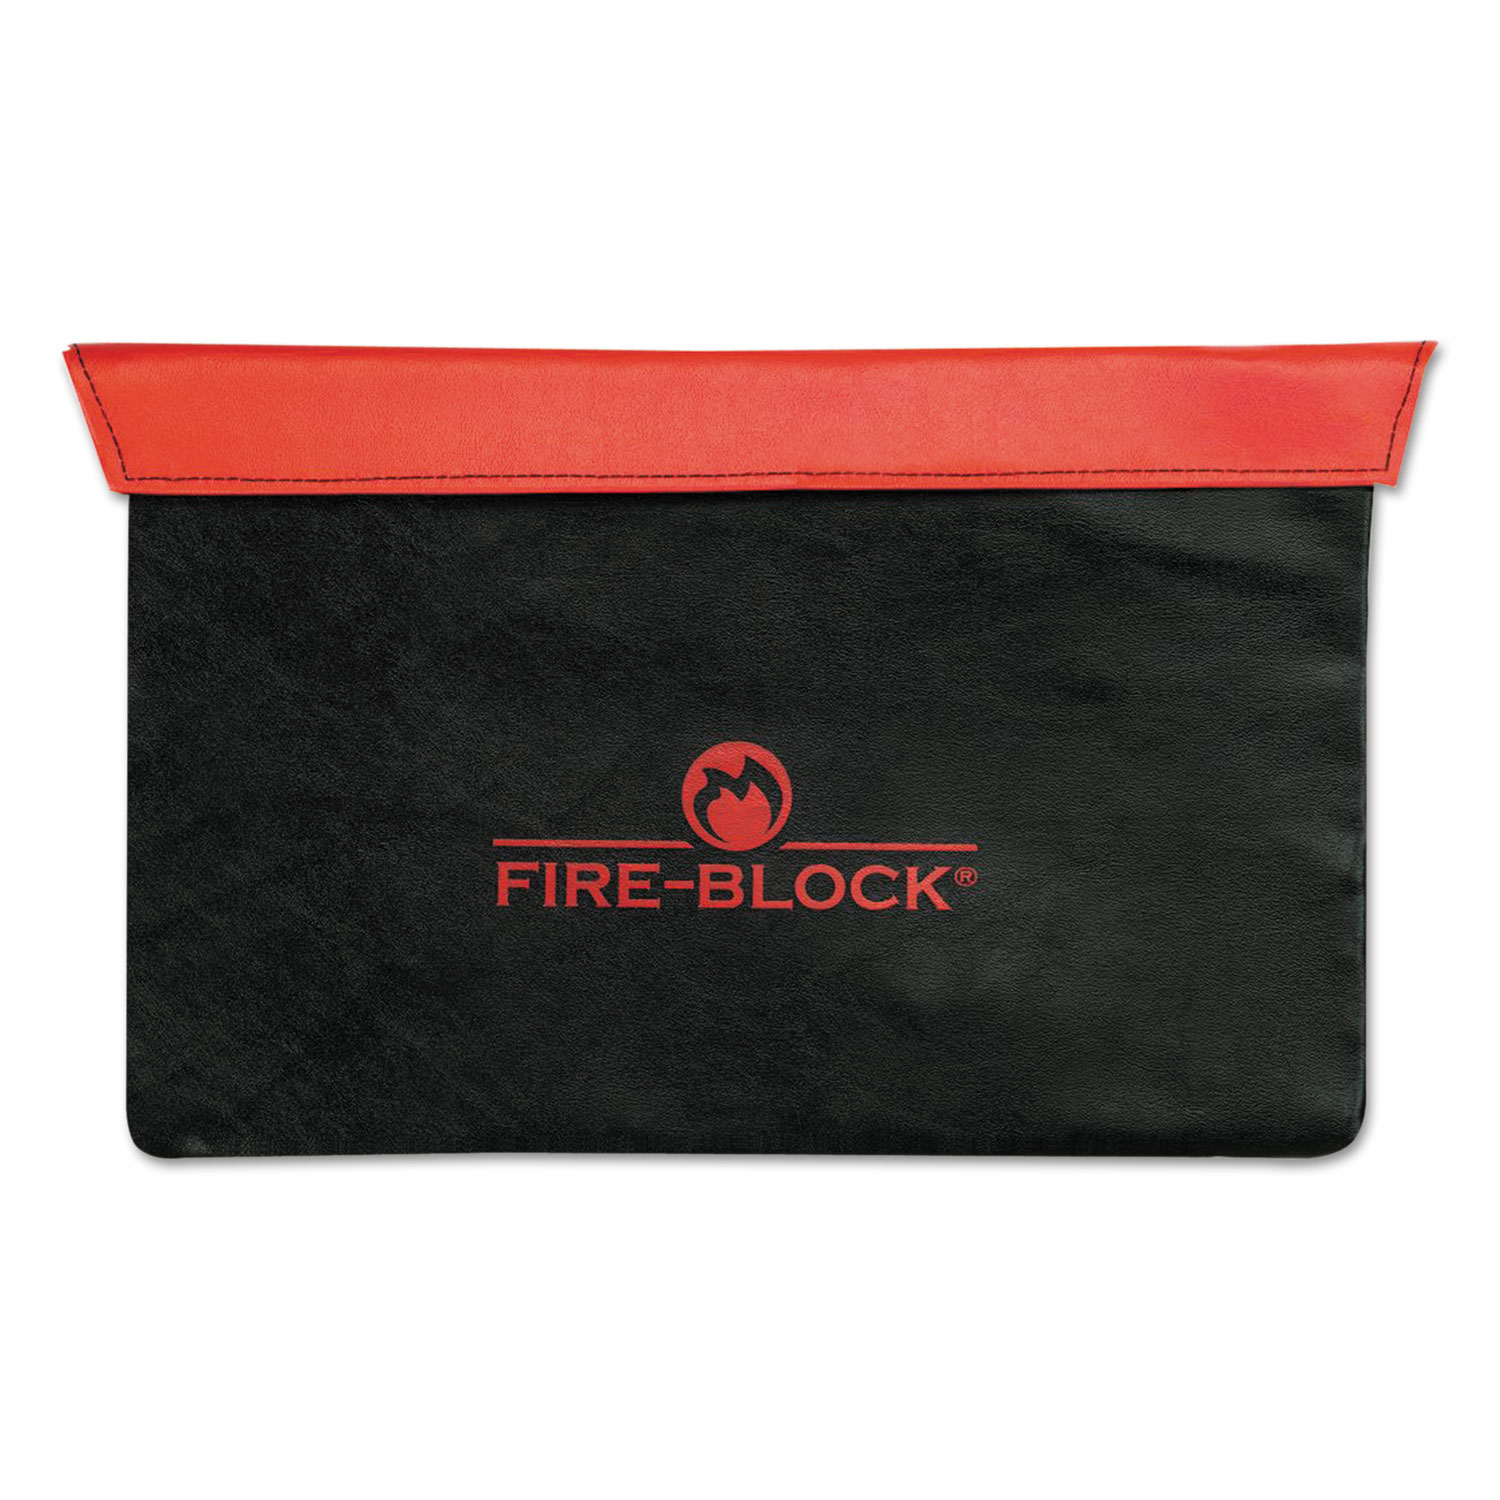  MMF Industries 2320421D0407 Fire-Block Document Portfolio, 15 1/2 x 10 x 1/2, Red/Black (MMF2320421D0407) 